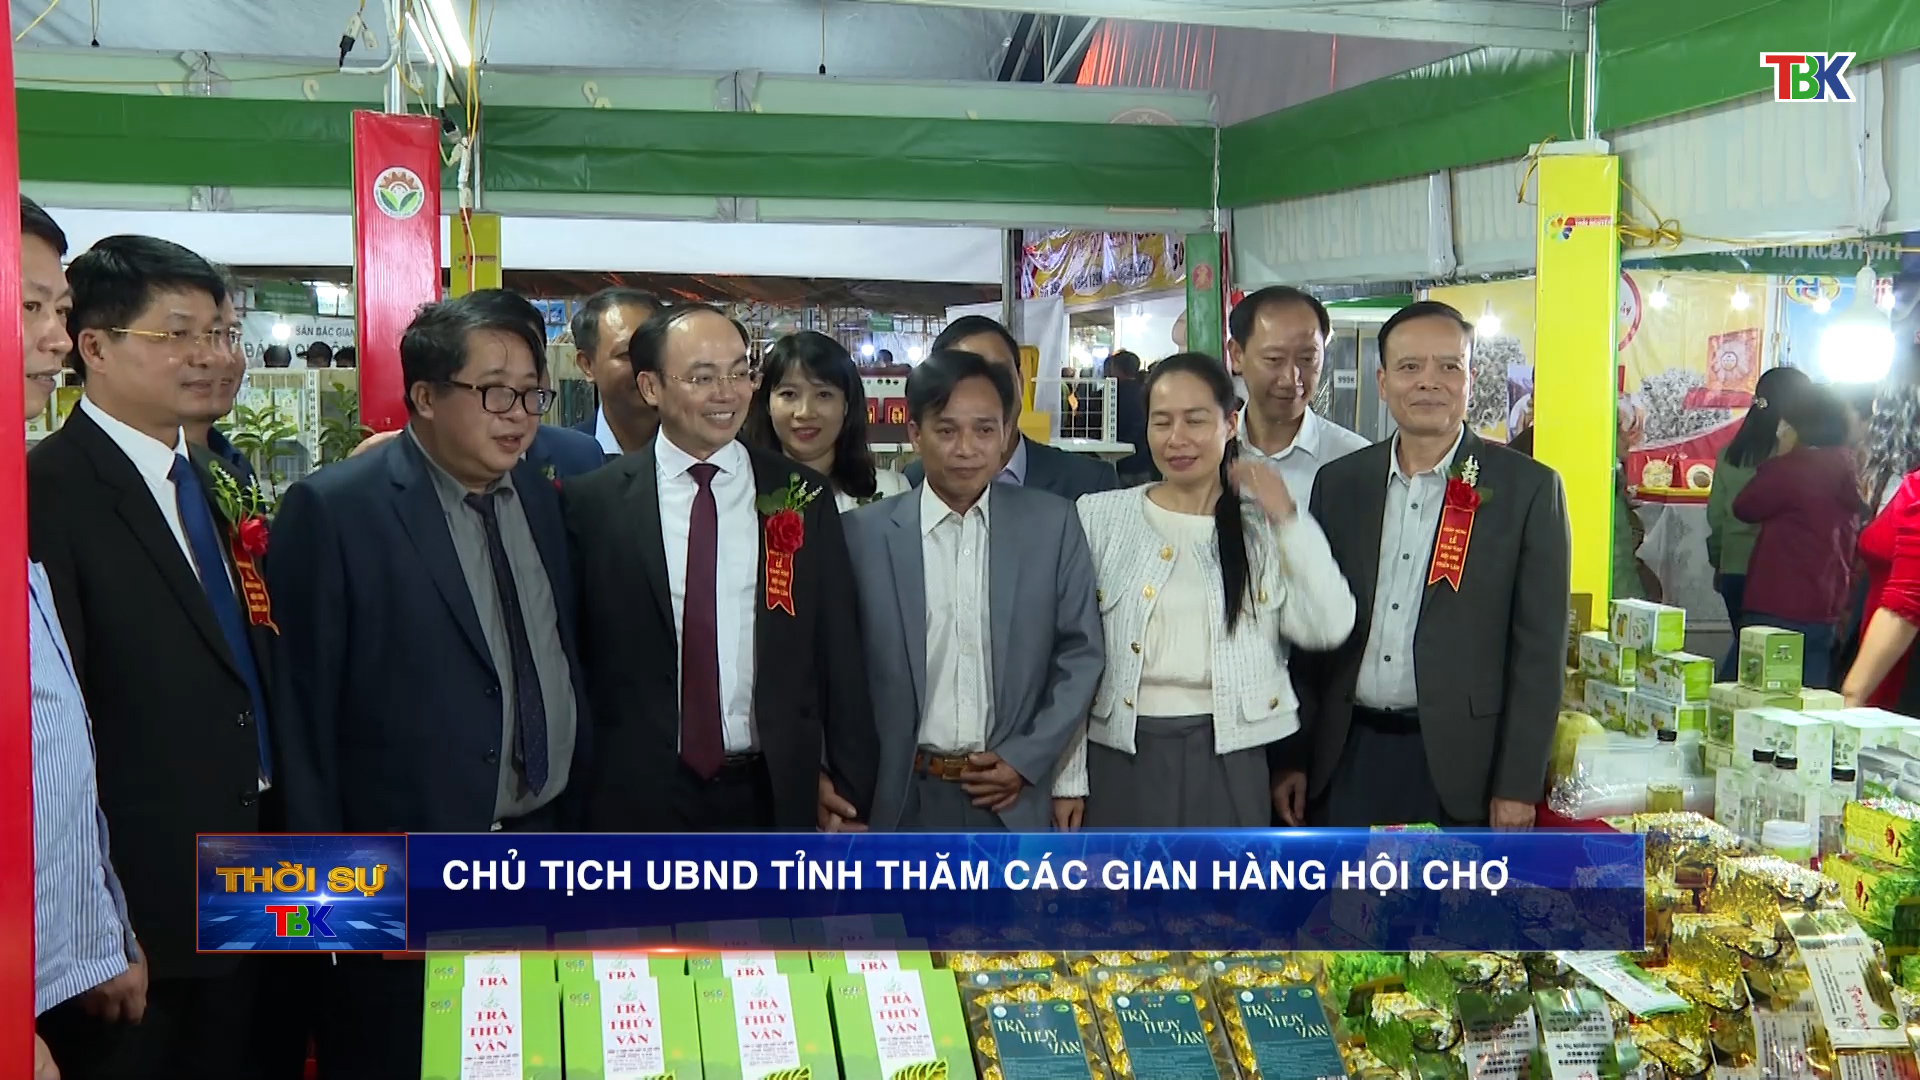 Chủ tịch UBND tỉnh Nguyễn Đăng Bình thăm các gian hàng Hội chợ